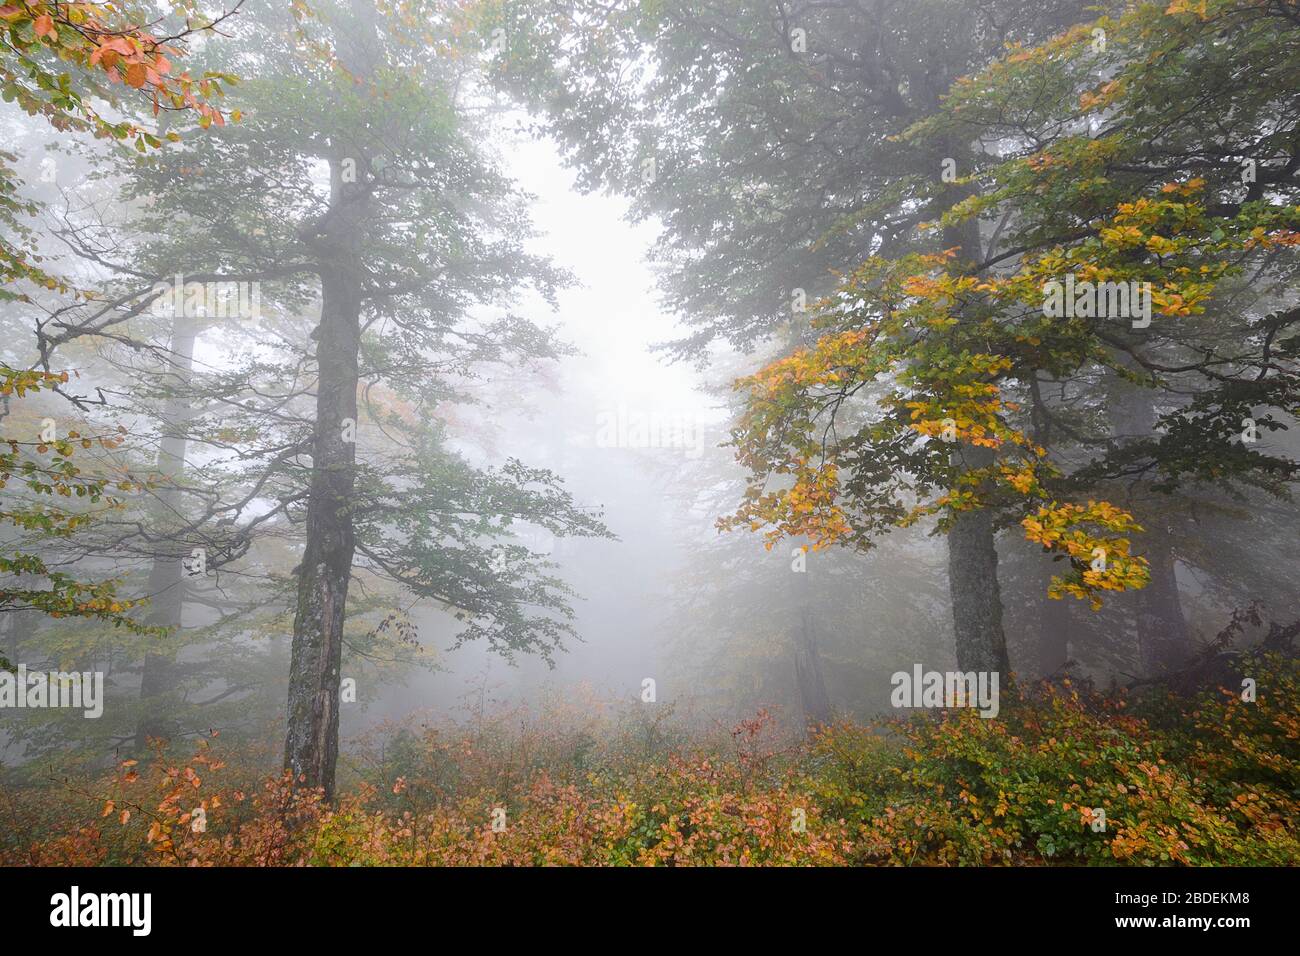 Hillside mountain Munchel, Borzhava, Carpathians, Zakarpattia region, Ukraine, 2019 Stock Photo